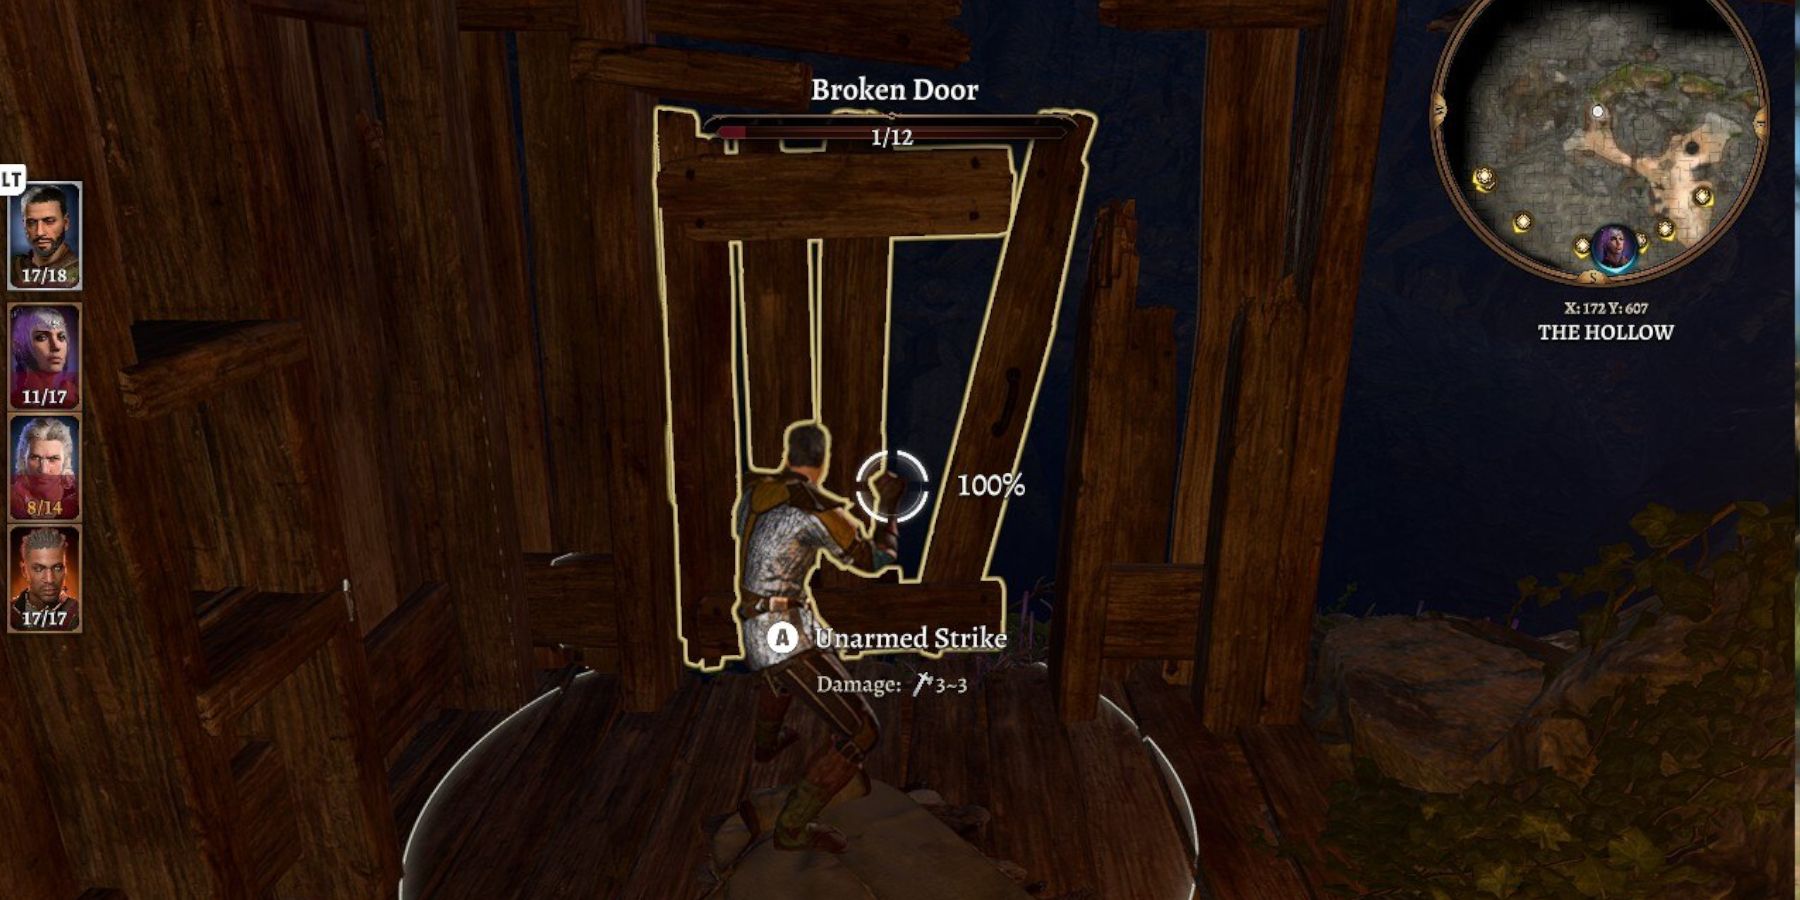 Baldur's Gate 3 punching the broken door to escape jail